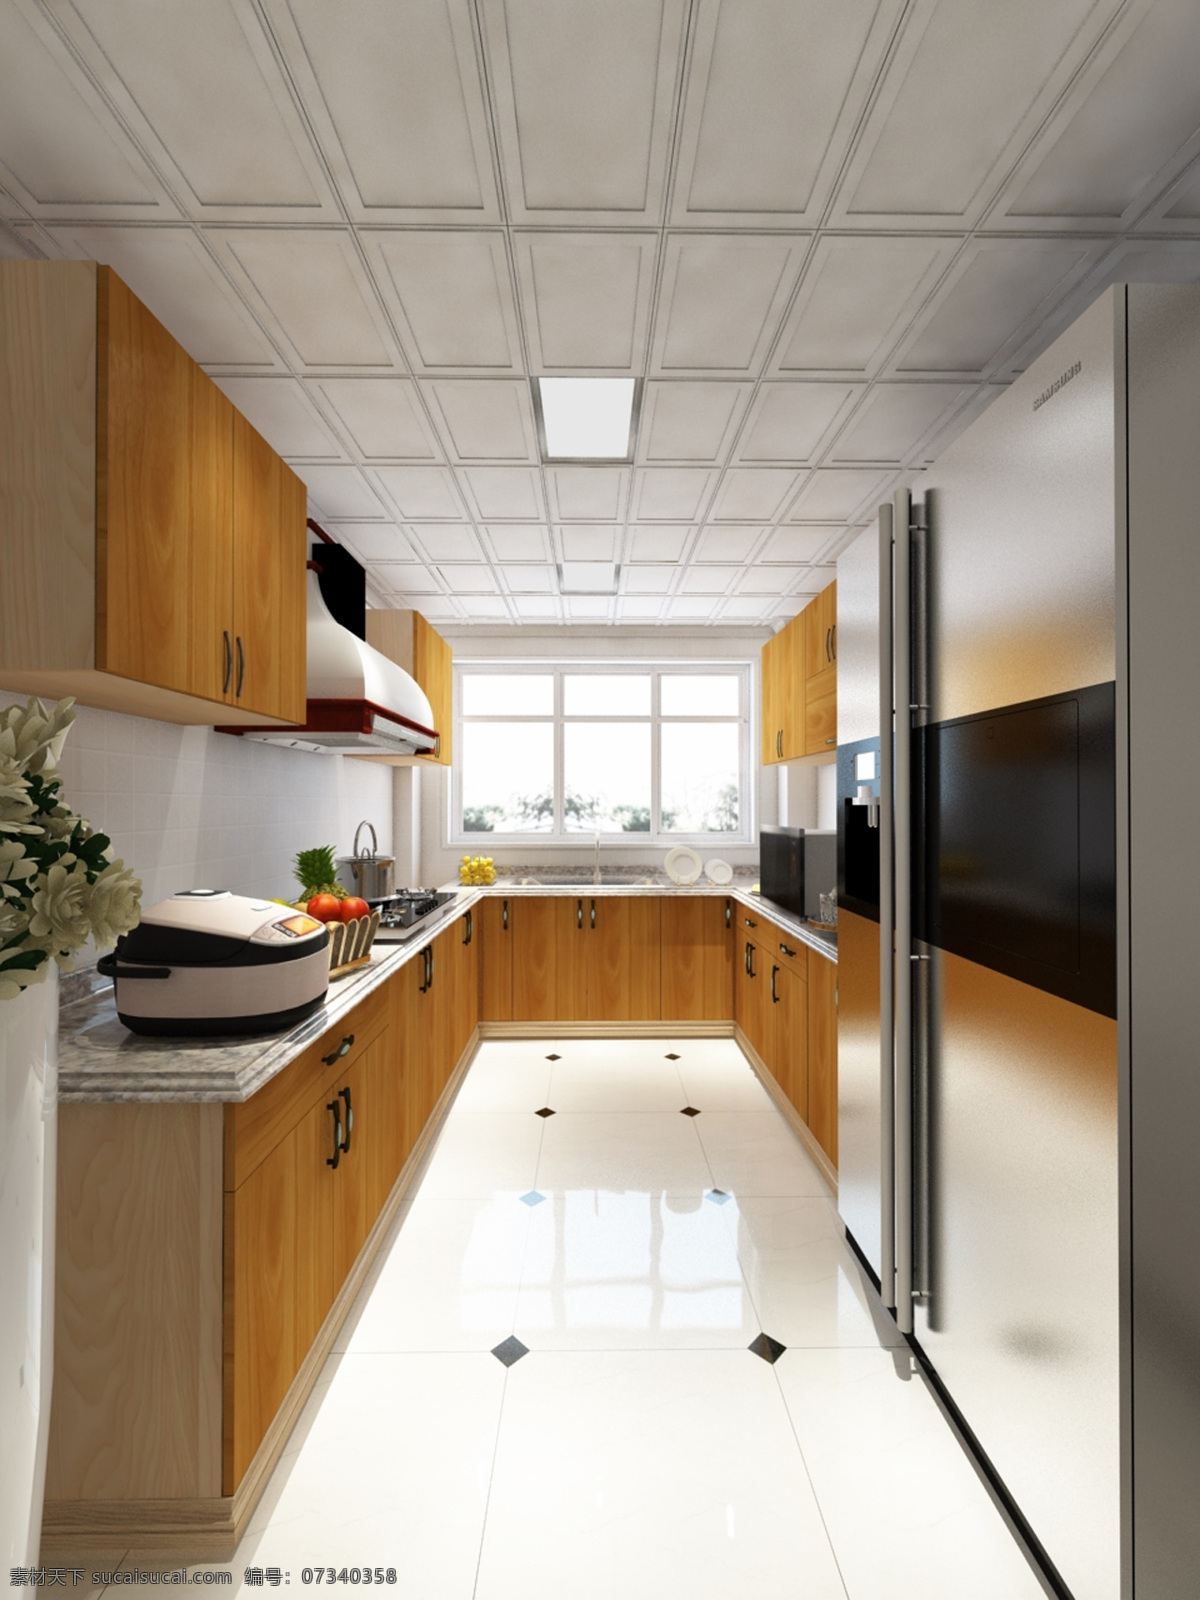 厨房 装修 效果图 简单装修 友邦 集成吊顶 定做橱柜 室内装修 环境设计 室内设计